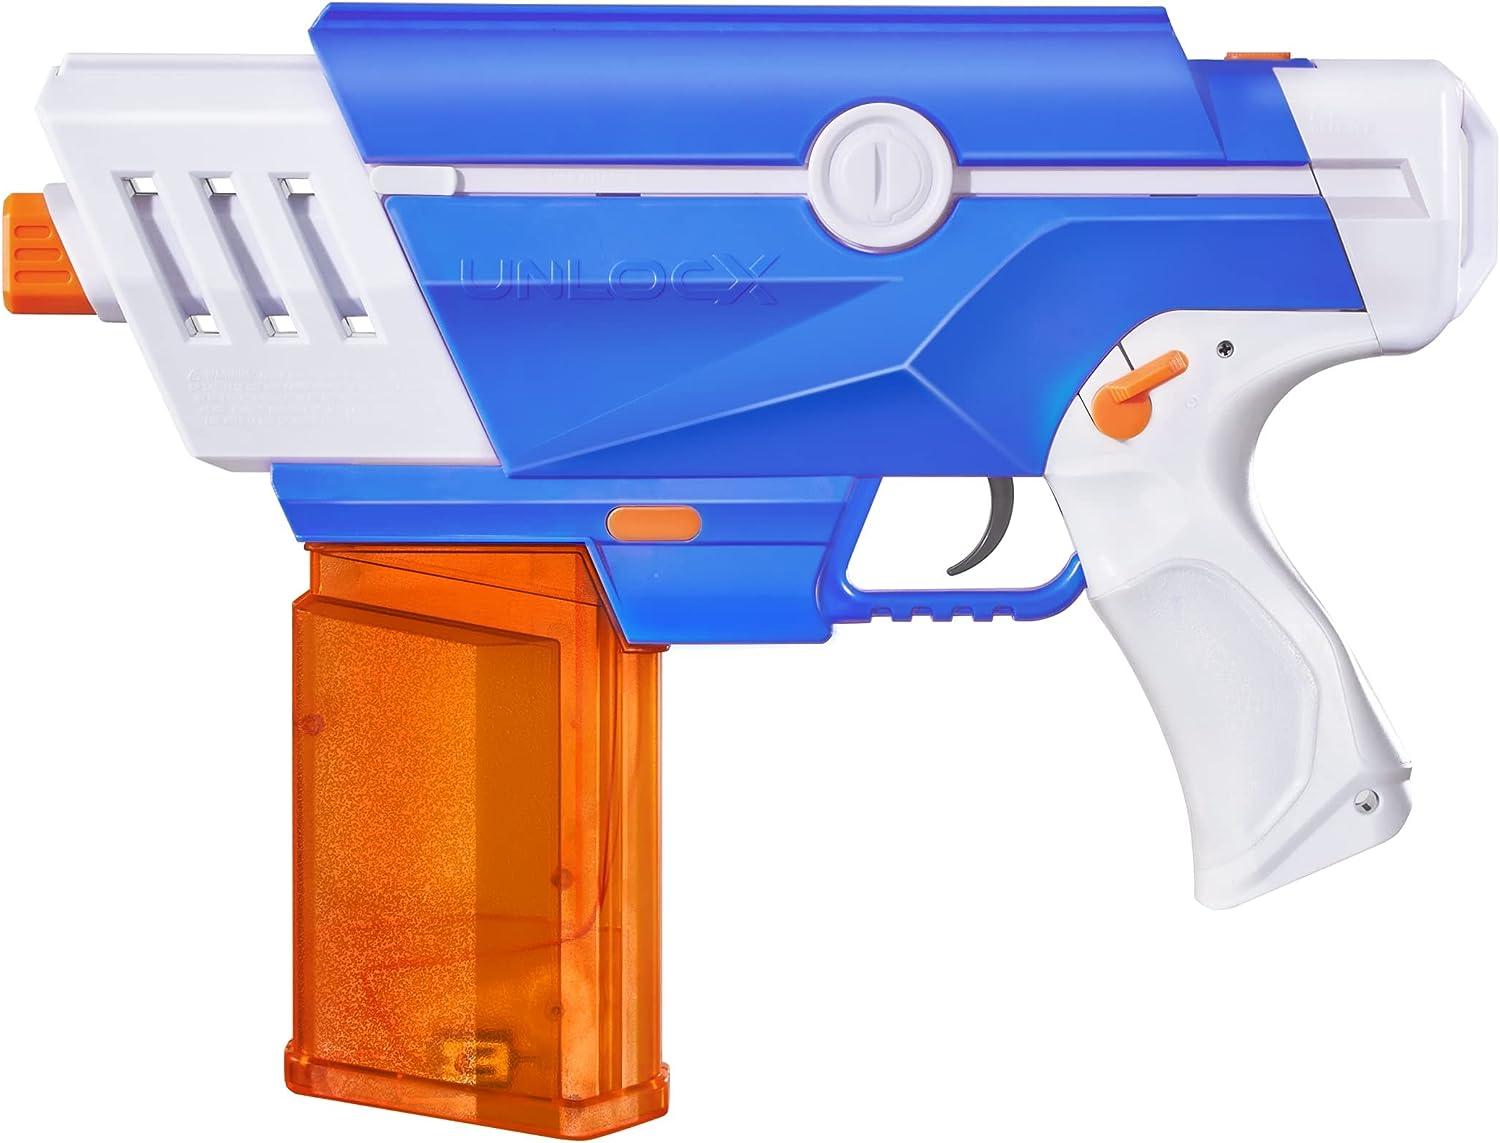 Unlocx Gel Blaster Pistol (aankoop)